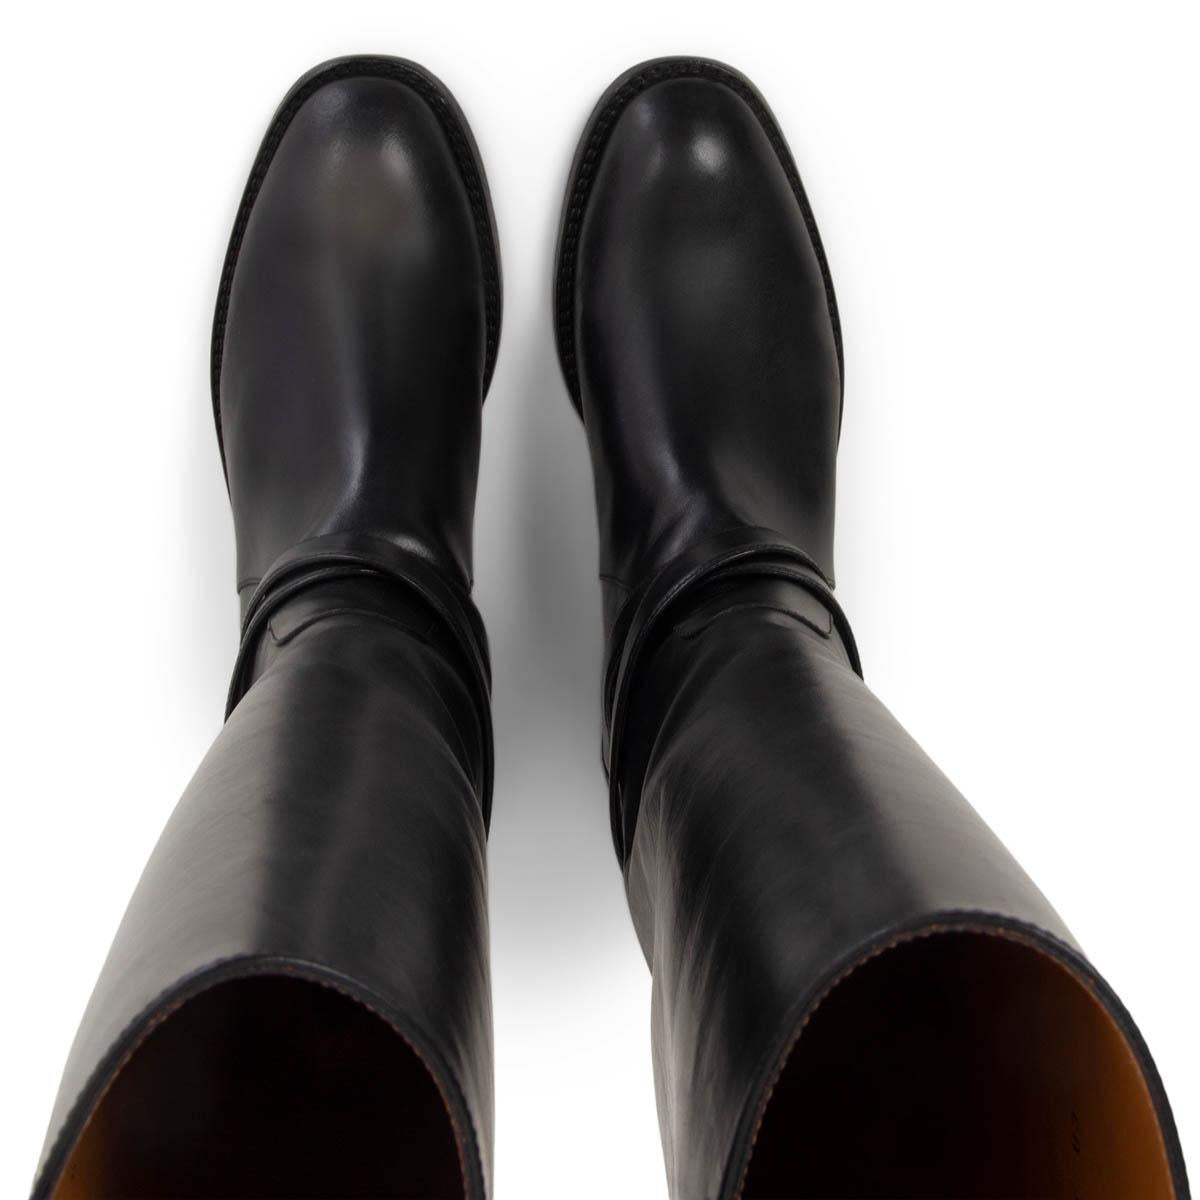 Black SAINT LAURENT black leather CAVALIERE BUCKLE FLAT RIDING Boots Shoes 41